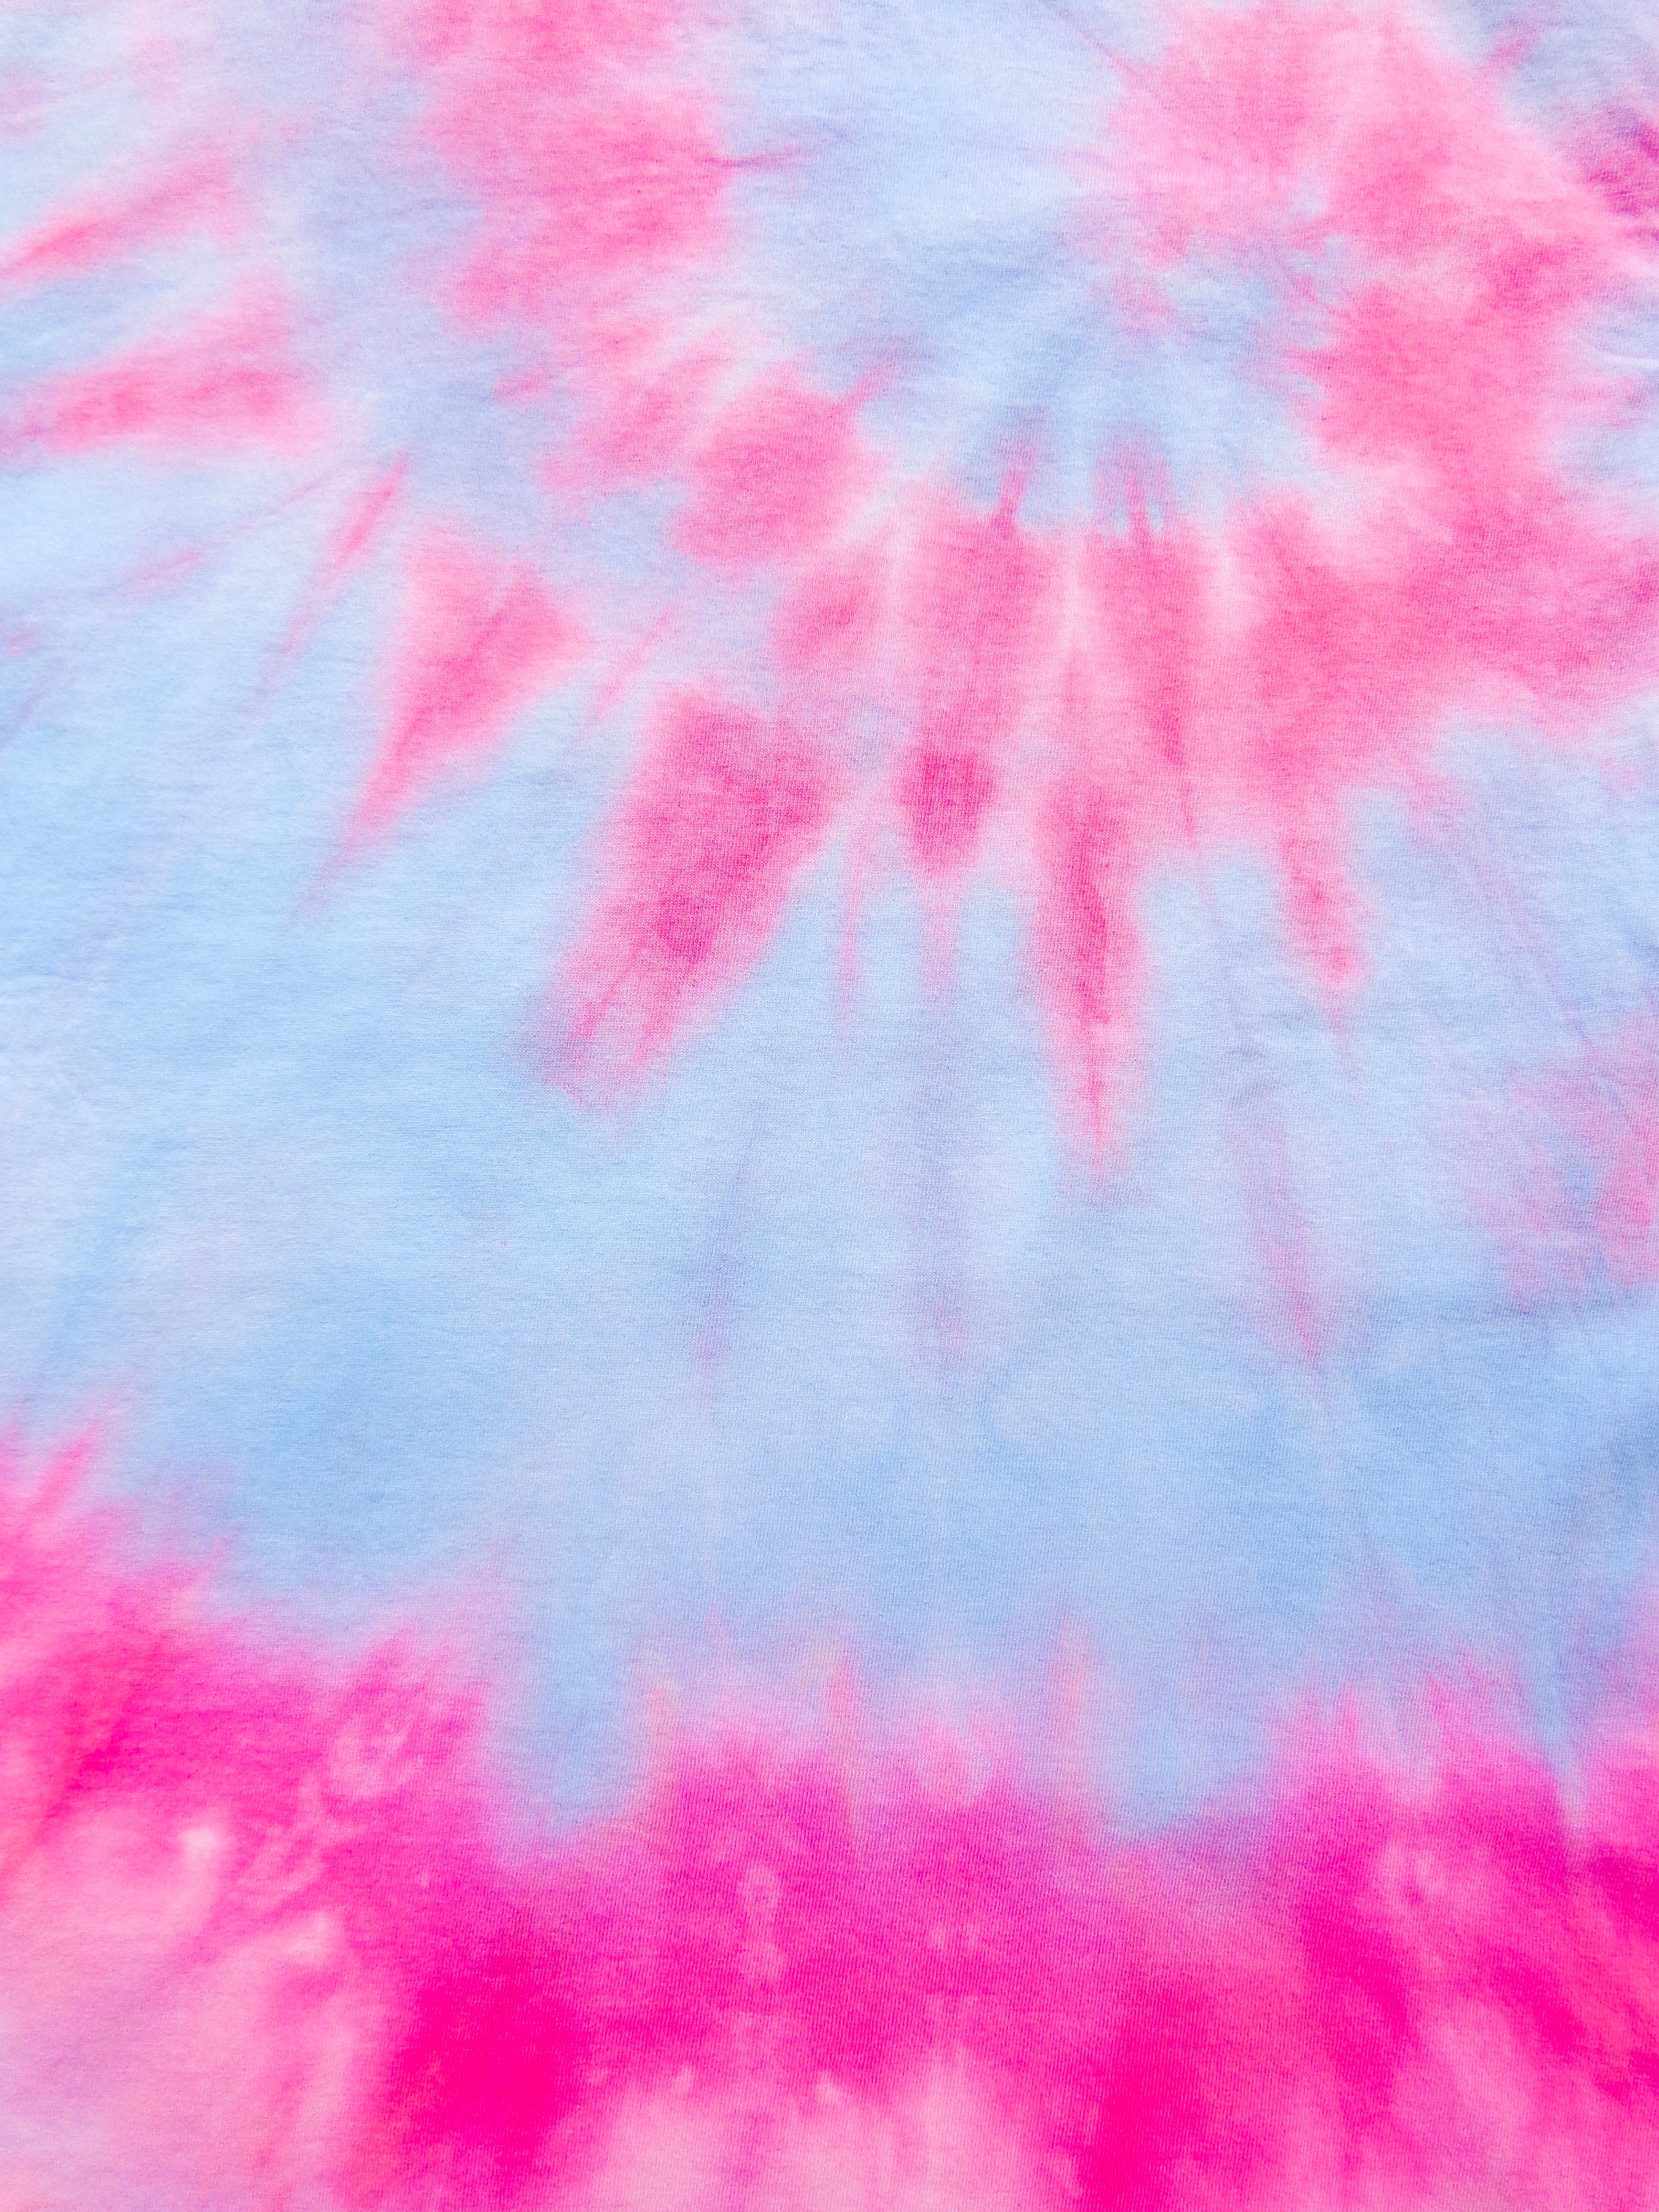 Tie Dye T-Shirt Cosmic Swirls Design Pink Blue Purple | Etsy